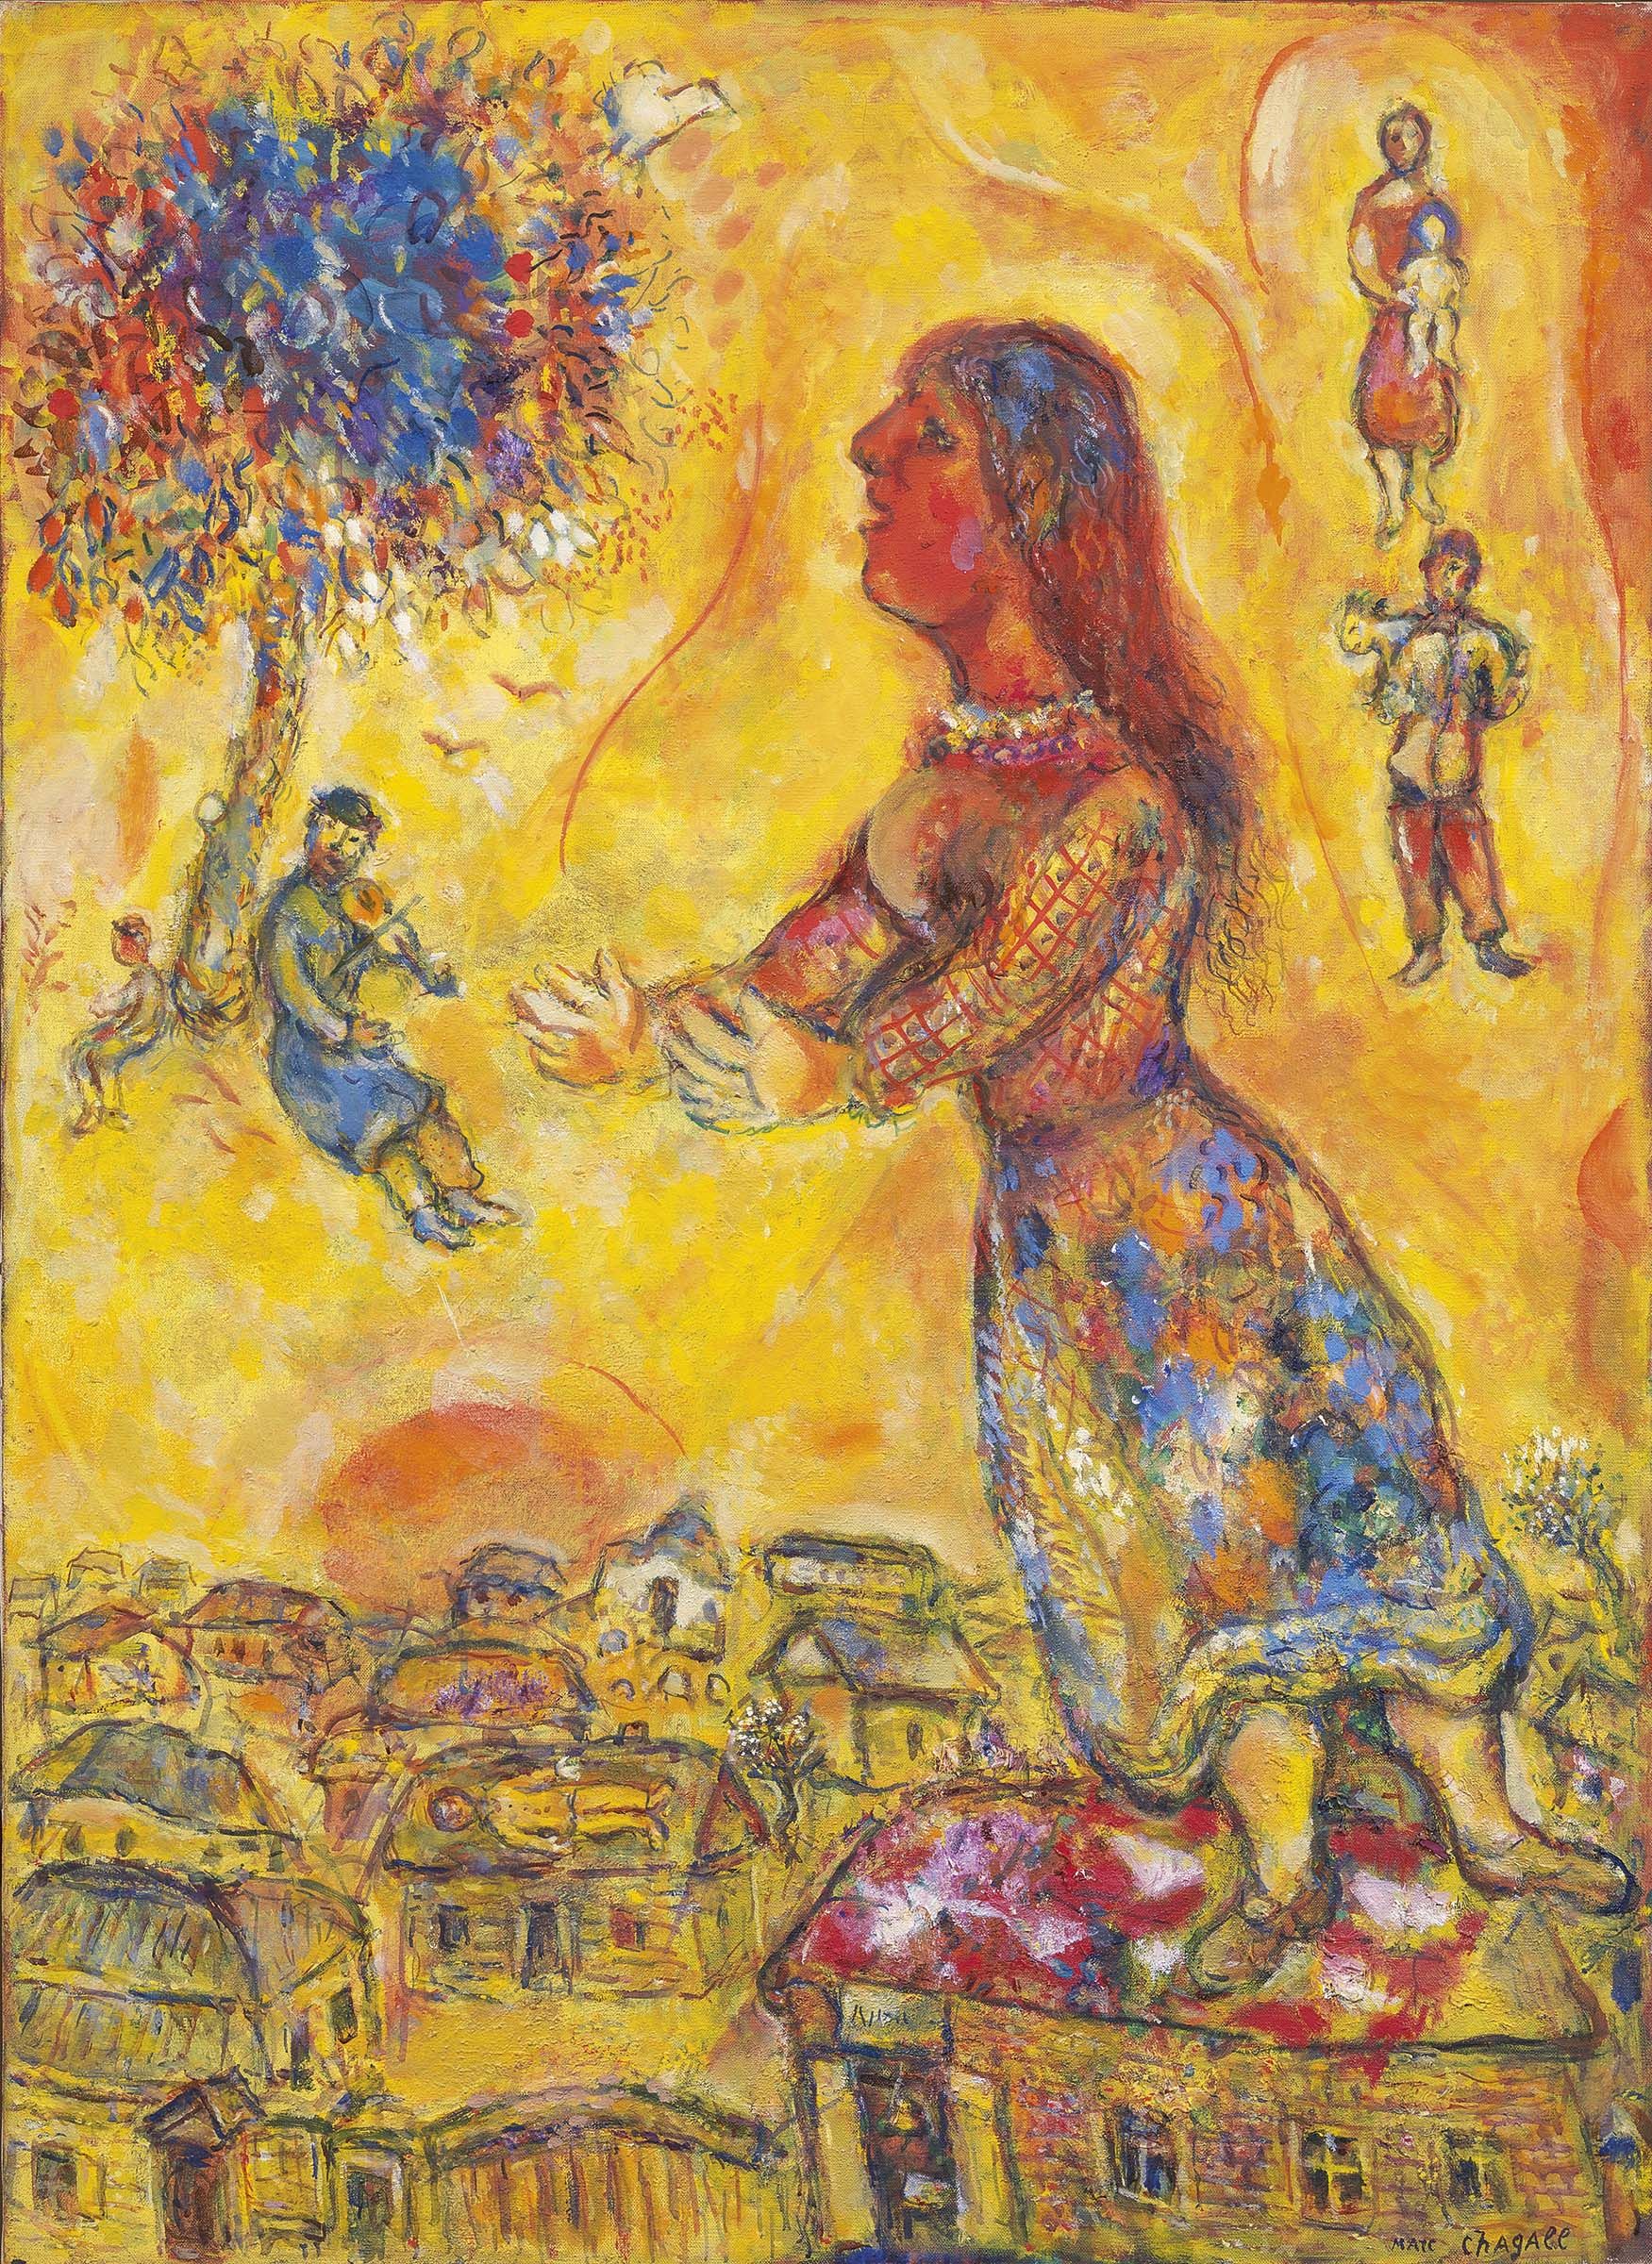 Marc ChagallVitebsk 1887 - Saint Paul de Vence 1985 Arbre et maisons, 1970 Huile sur toile